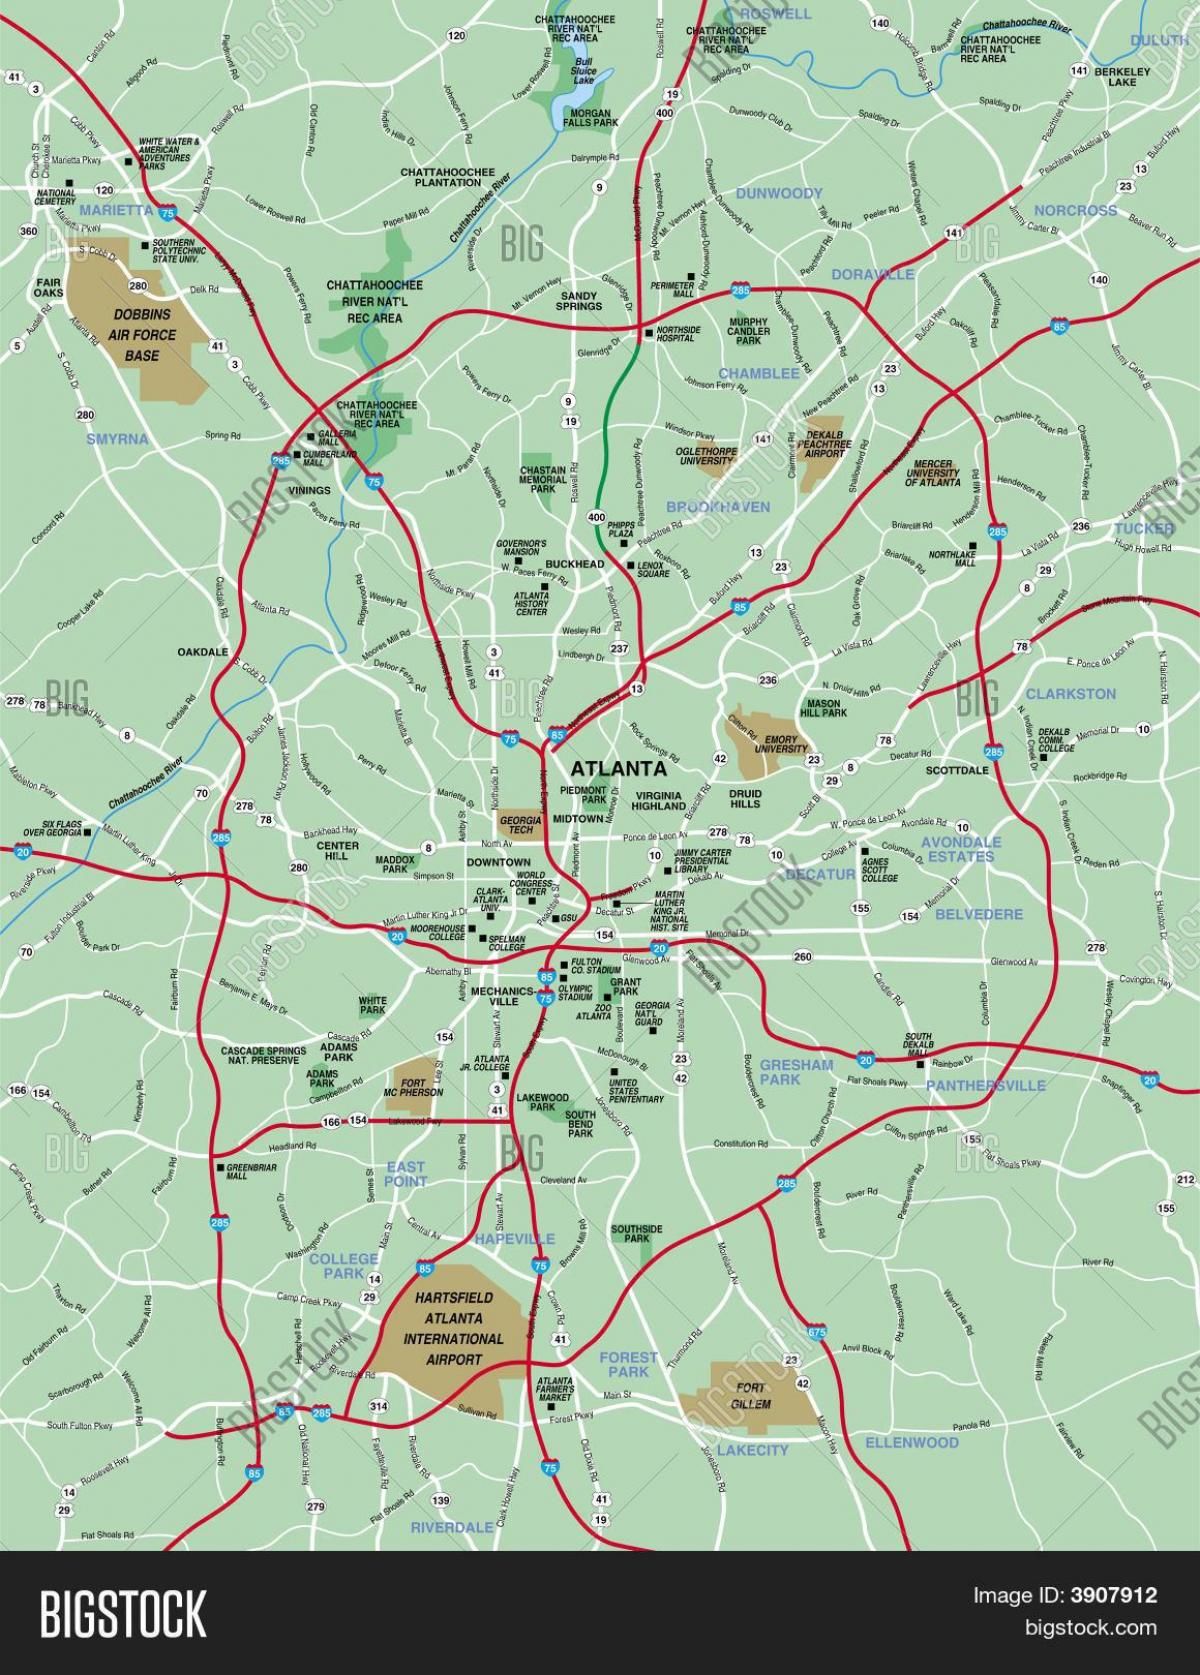 Map Of Greater Atlanta 